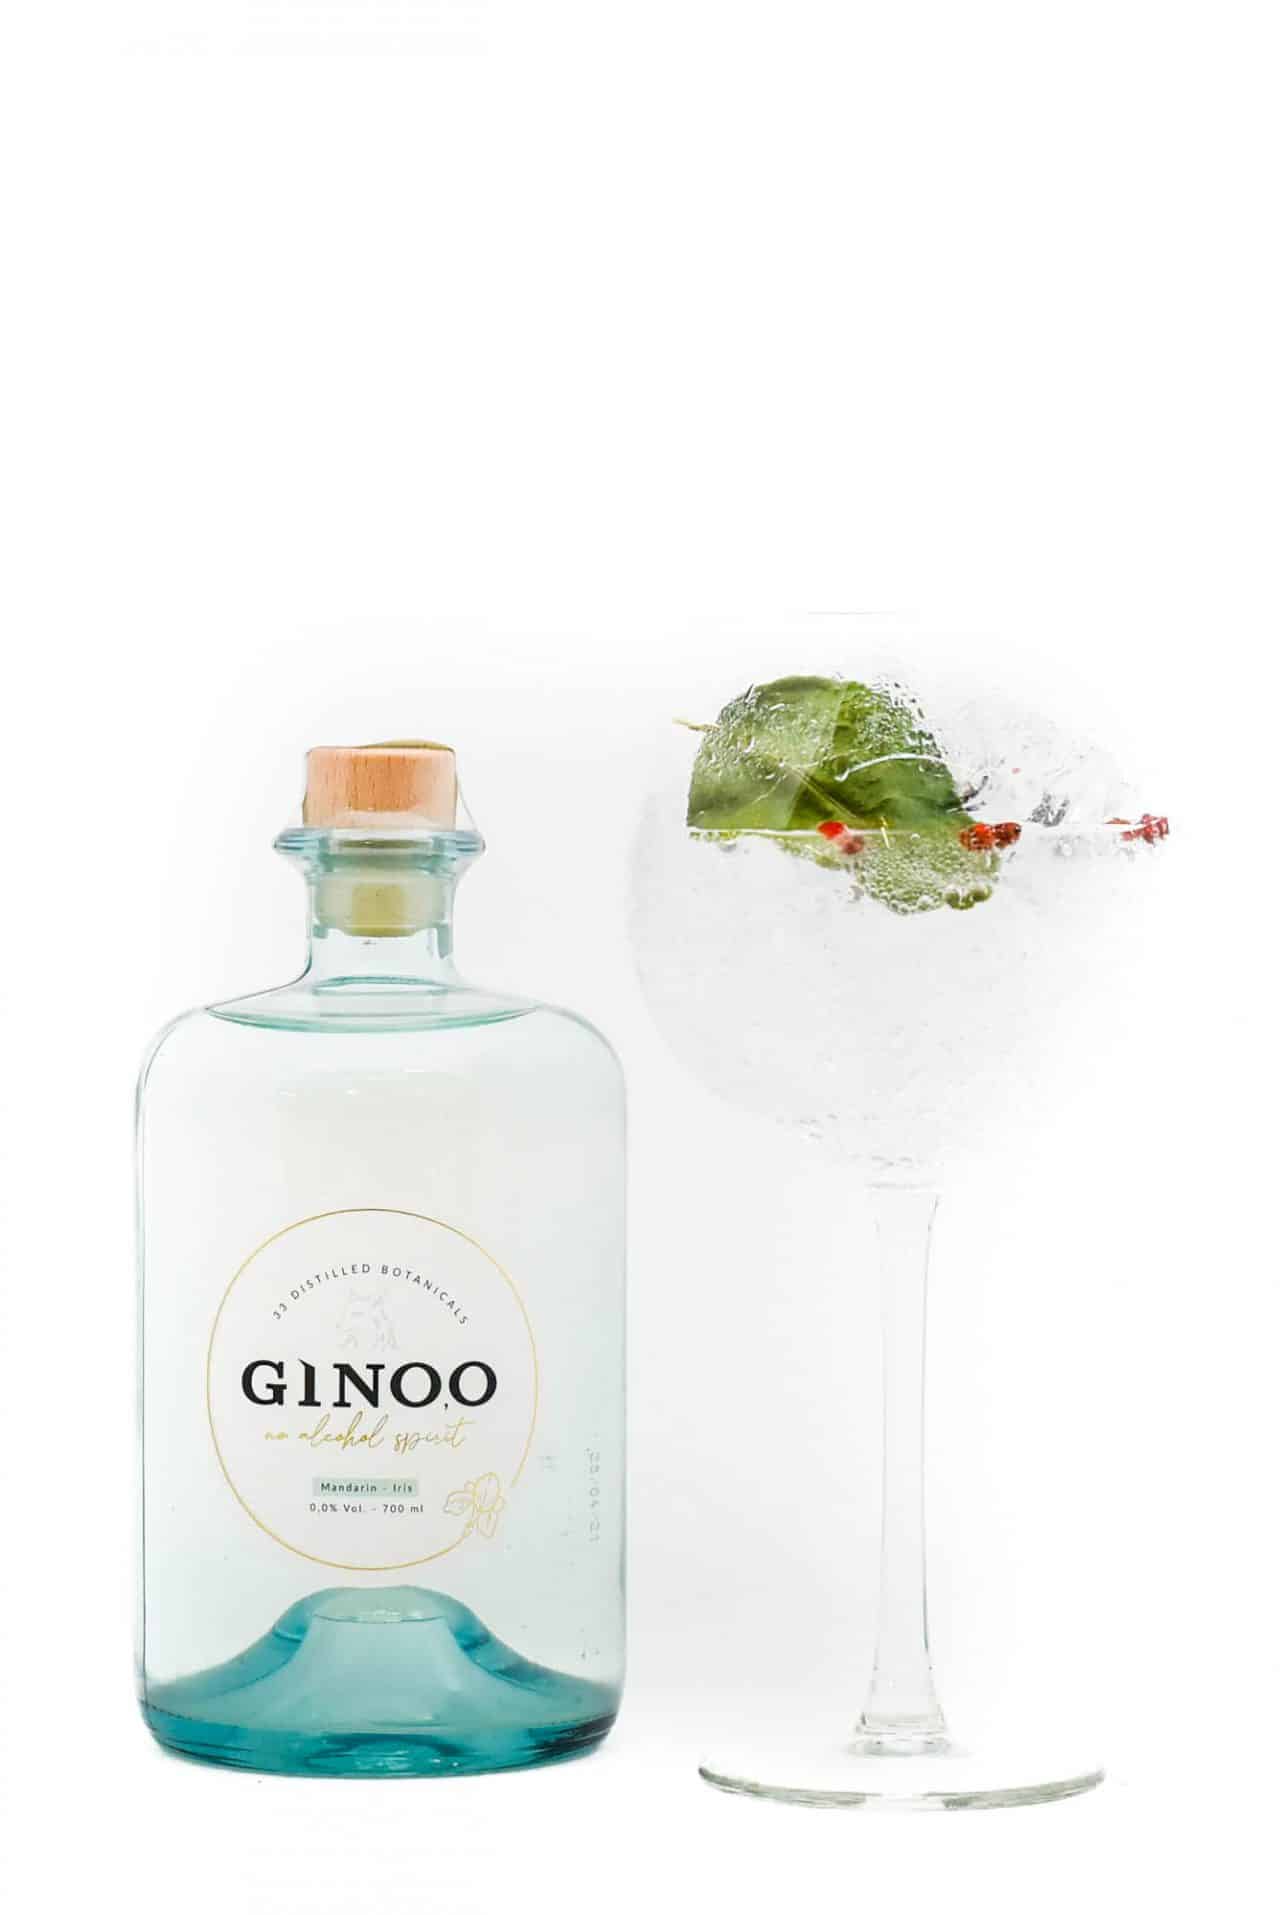 Ginoo alcoholvrije gin van Sterkstokers met glas